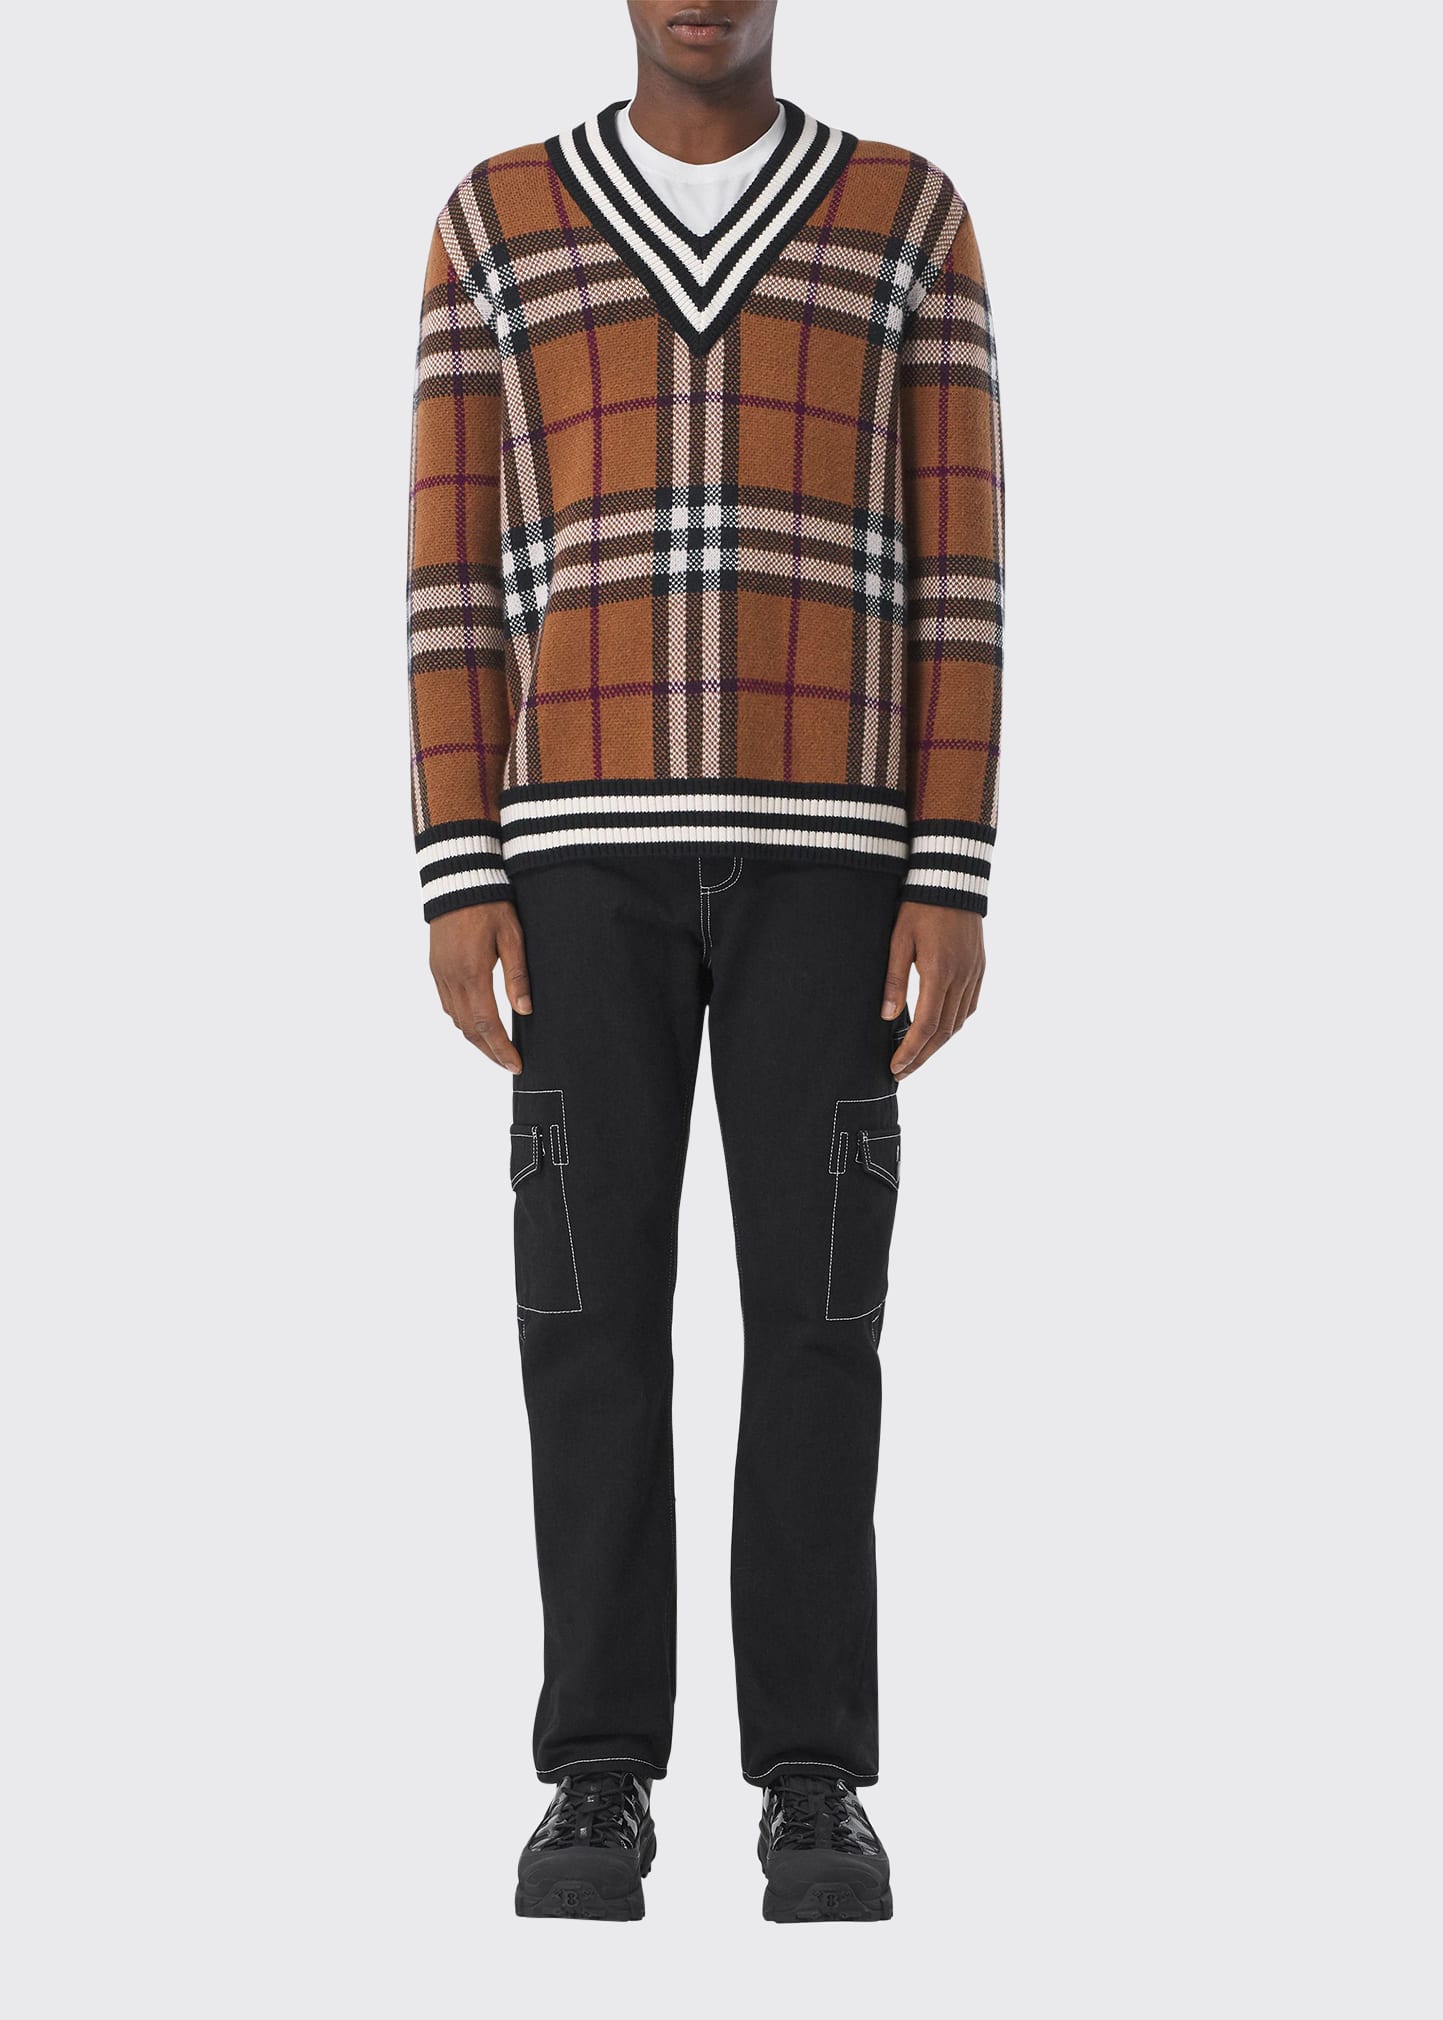 Burberry Men's Check V-Neck Sweater | Smart Closet